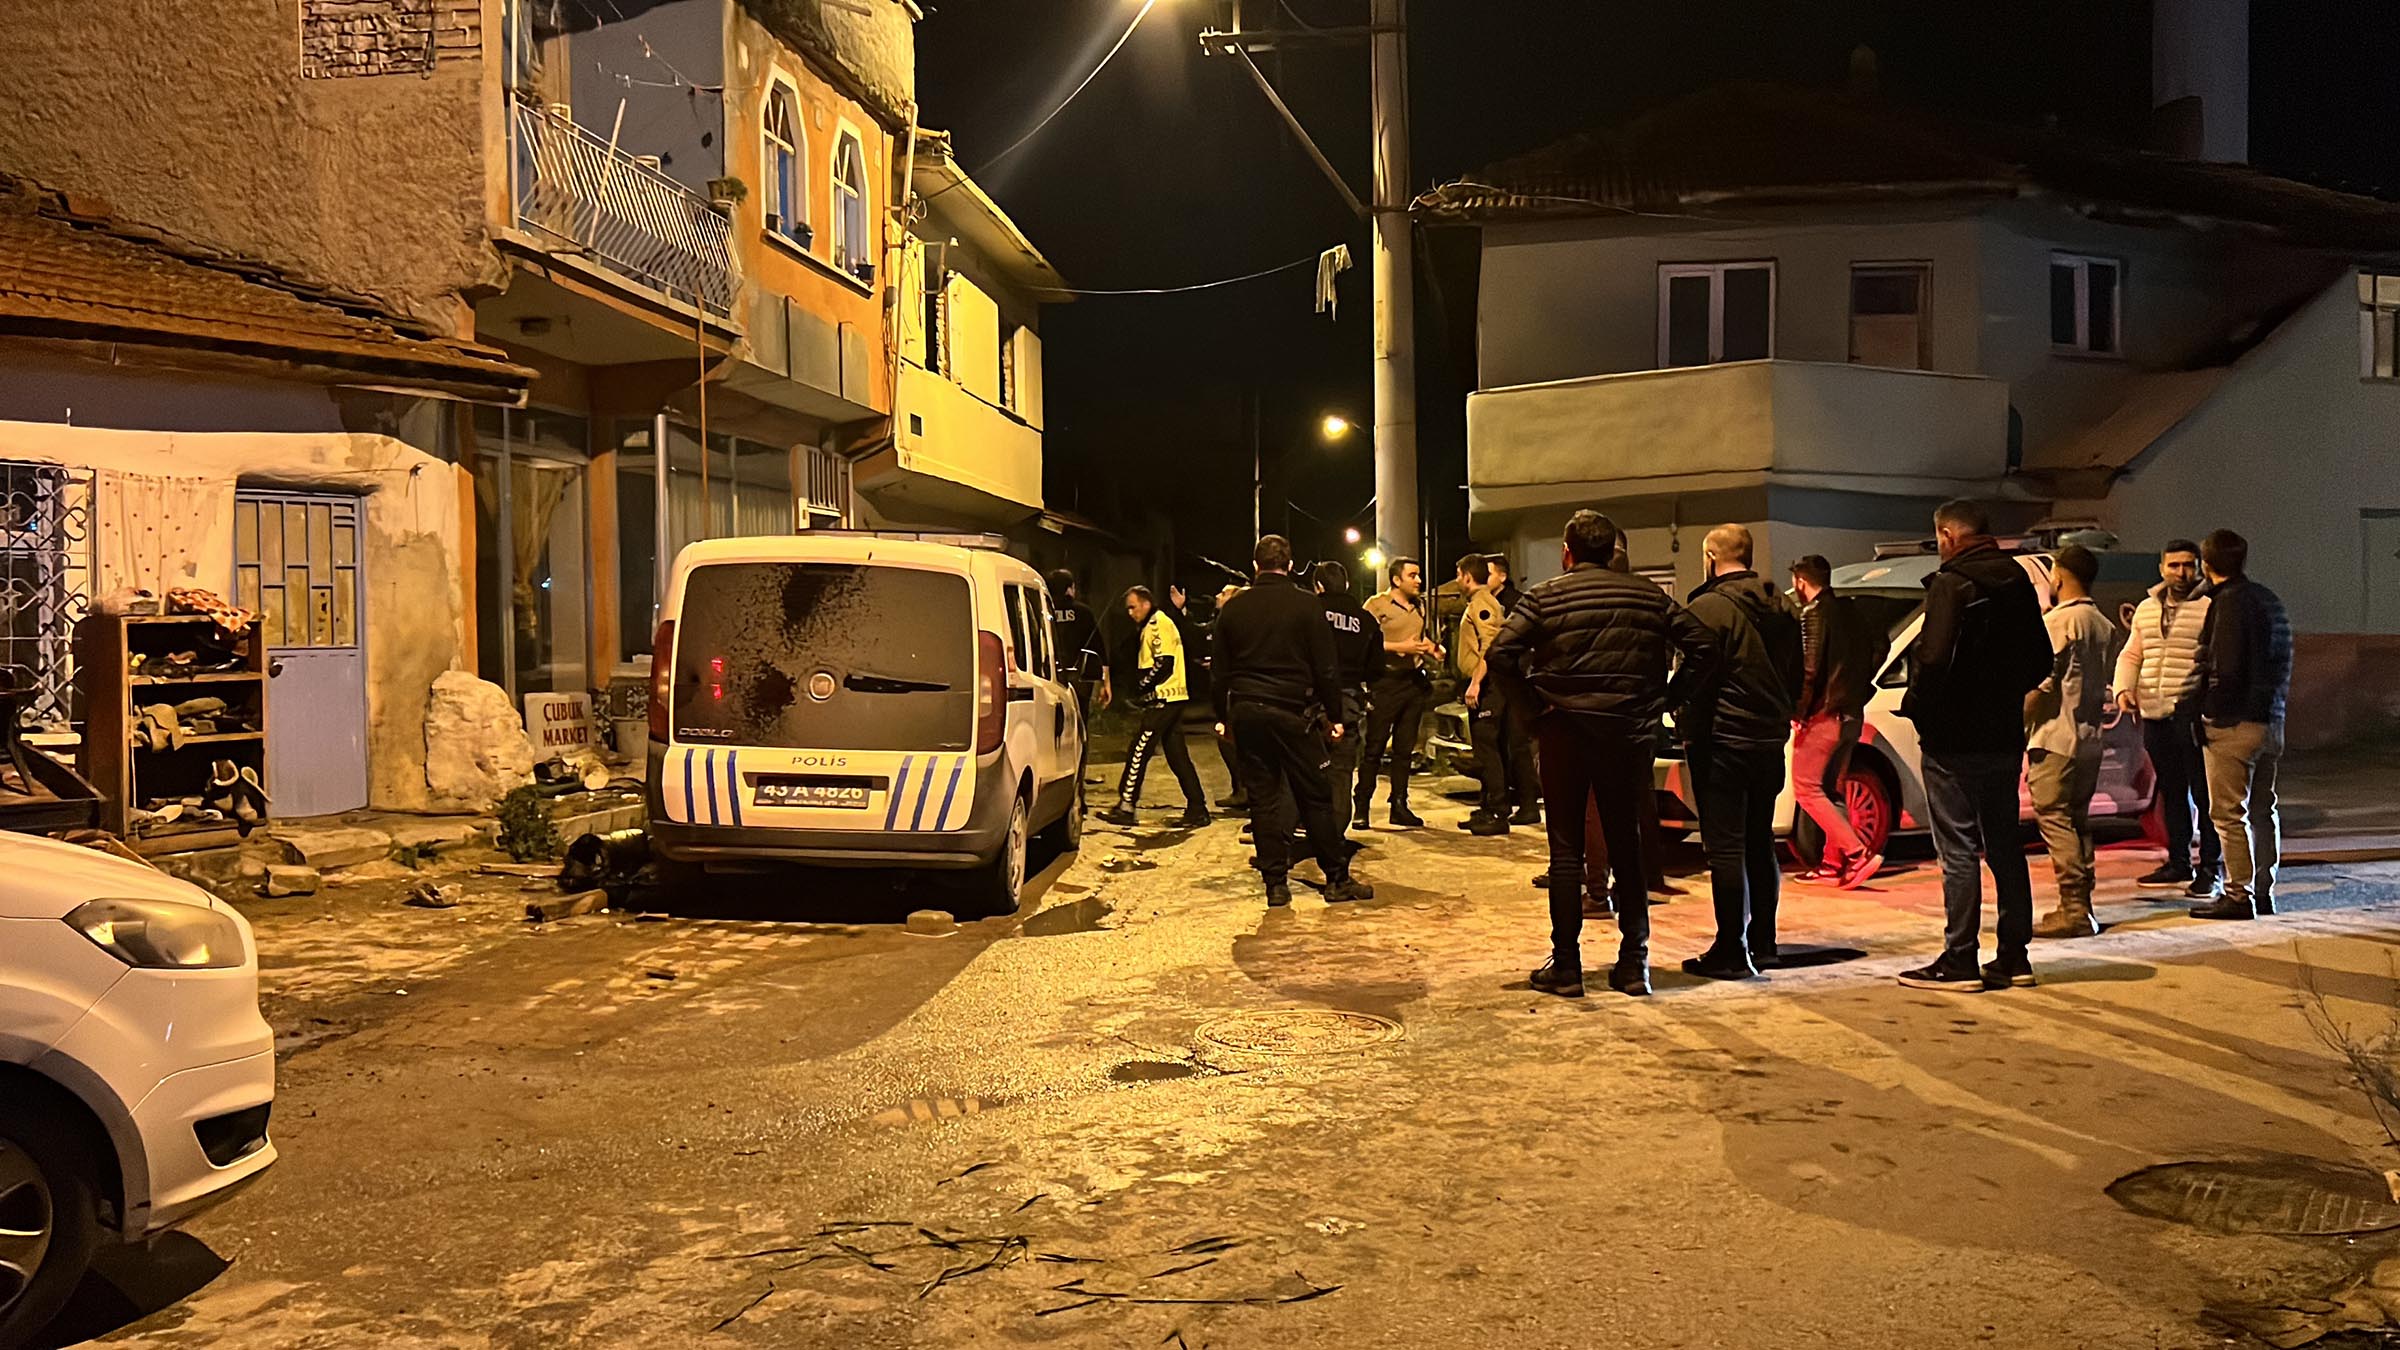 Romanlar yardım istedikleri polislere saldırdı! 2 polis yaralandı, 6 gözaltı